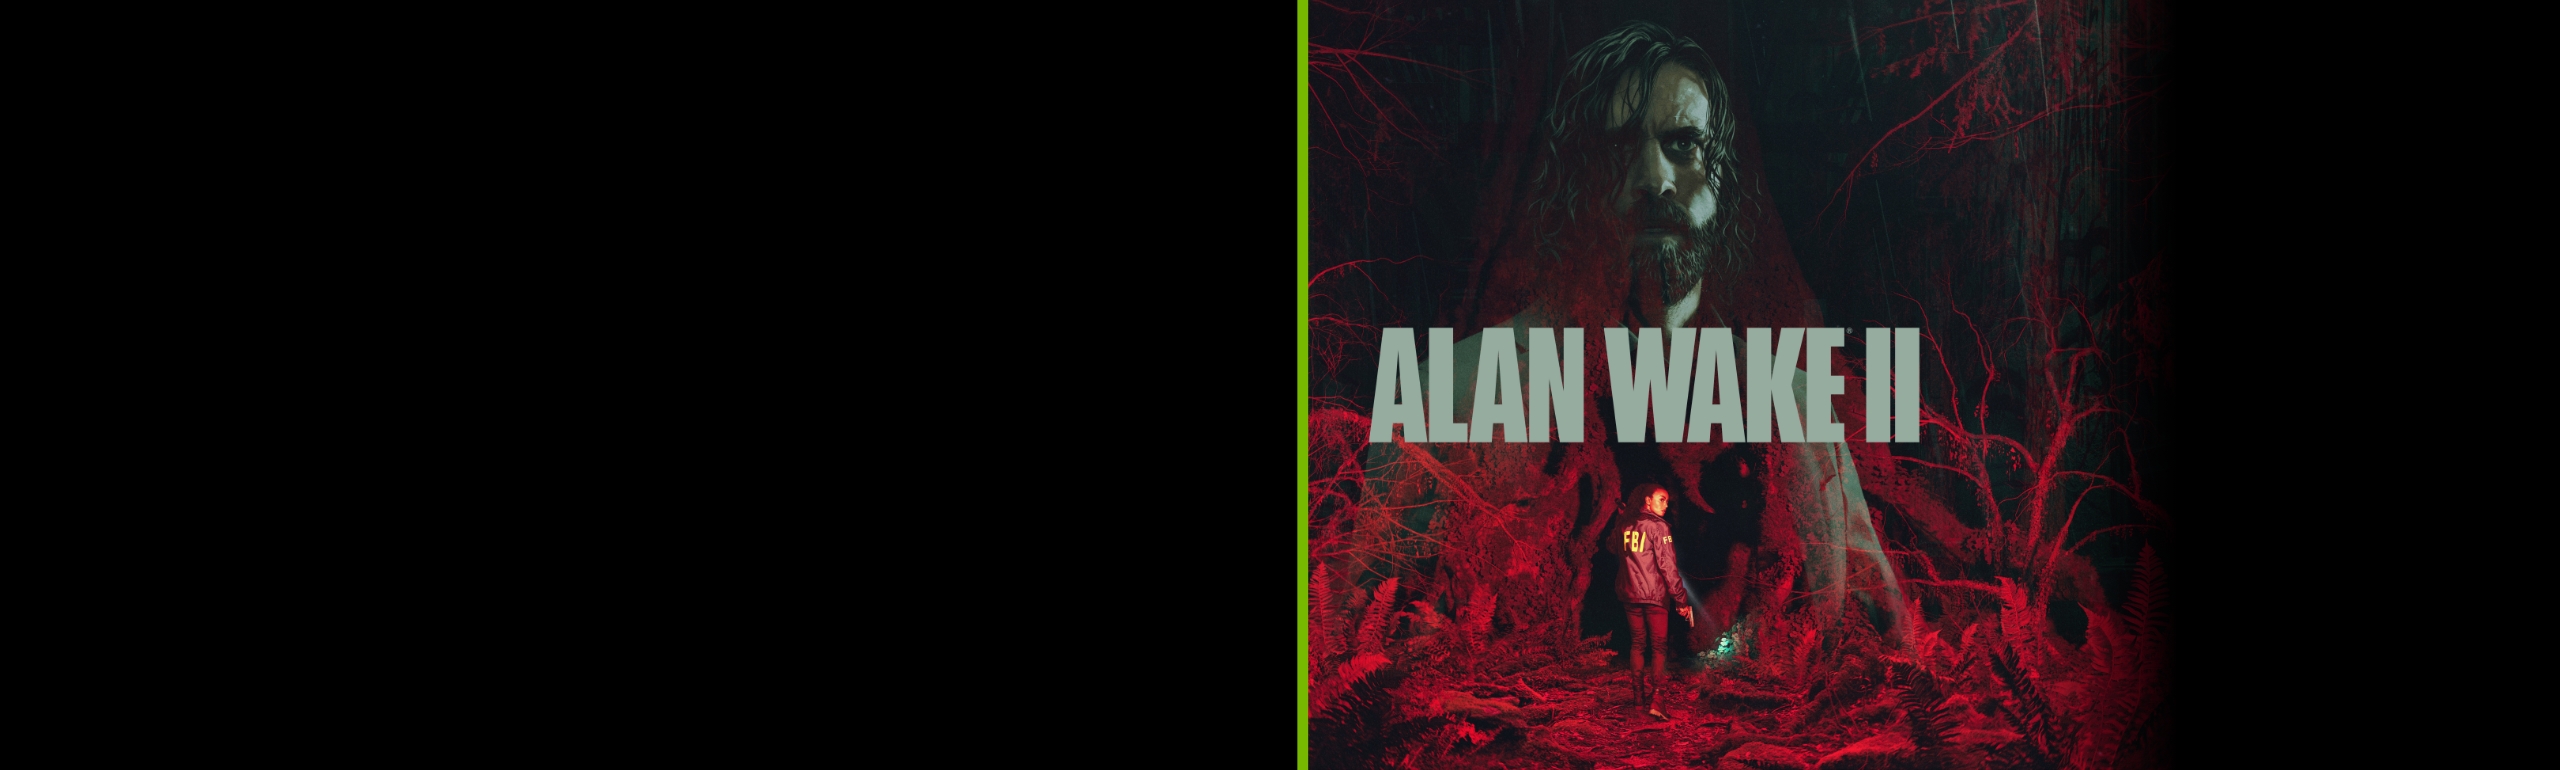 Alan Wake PC Game 